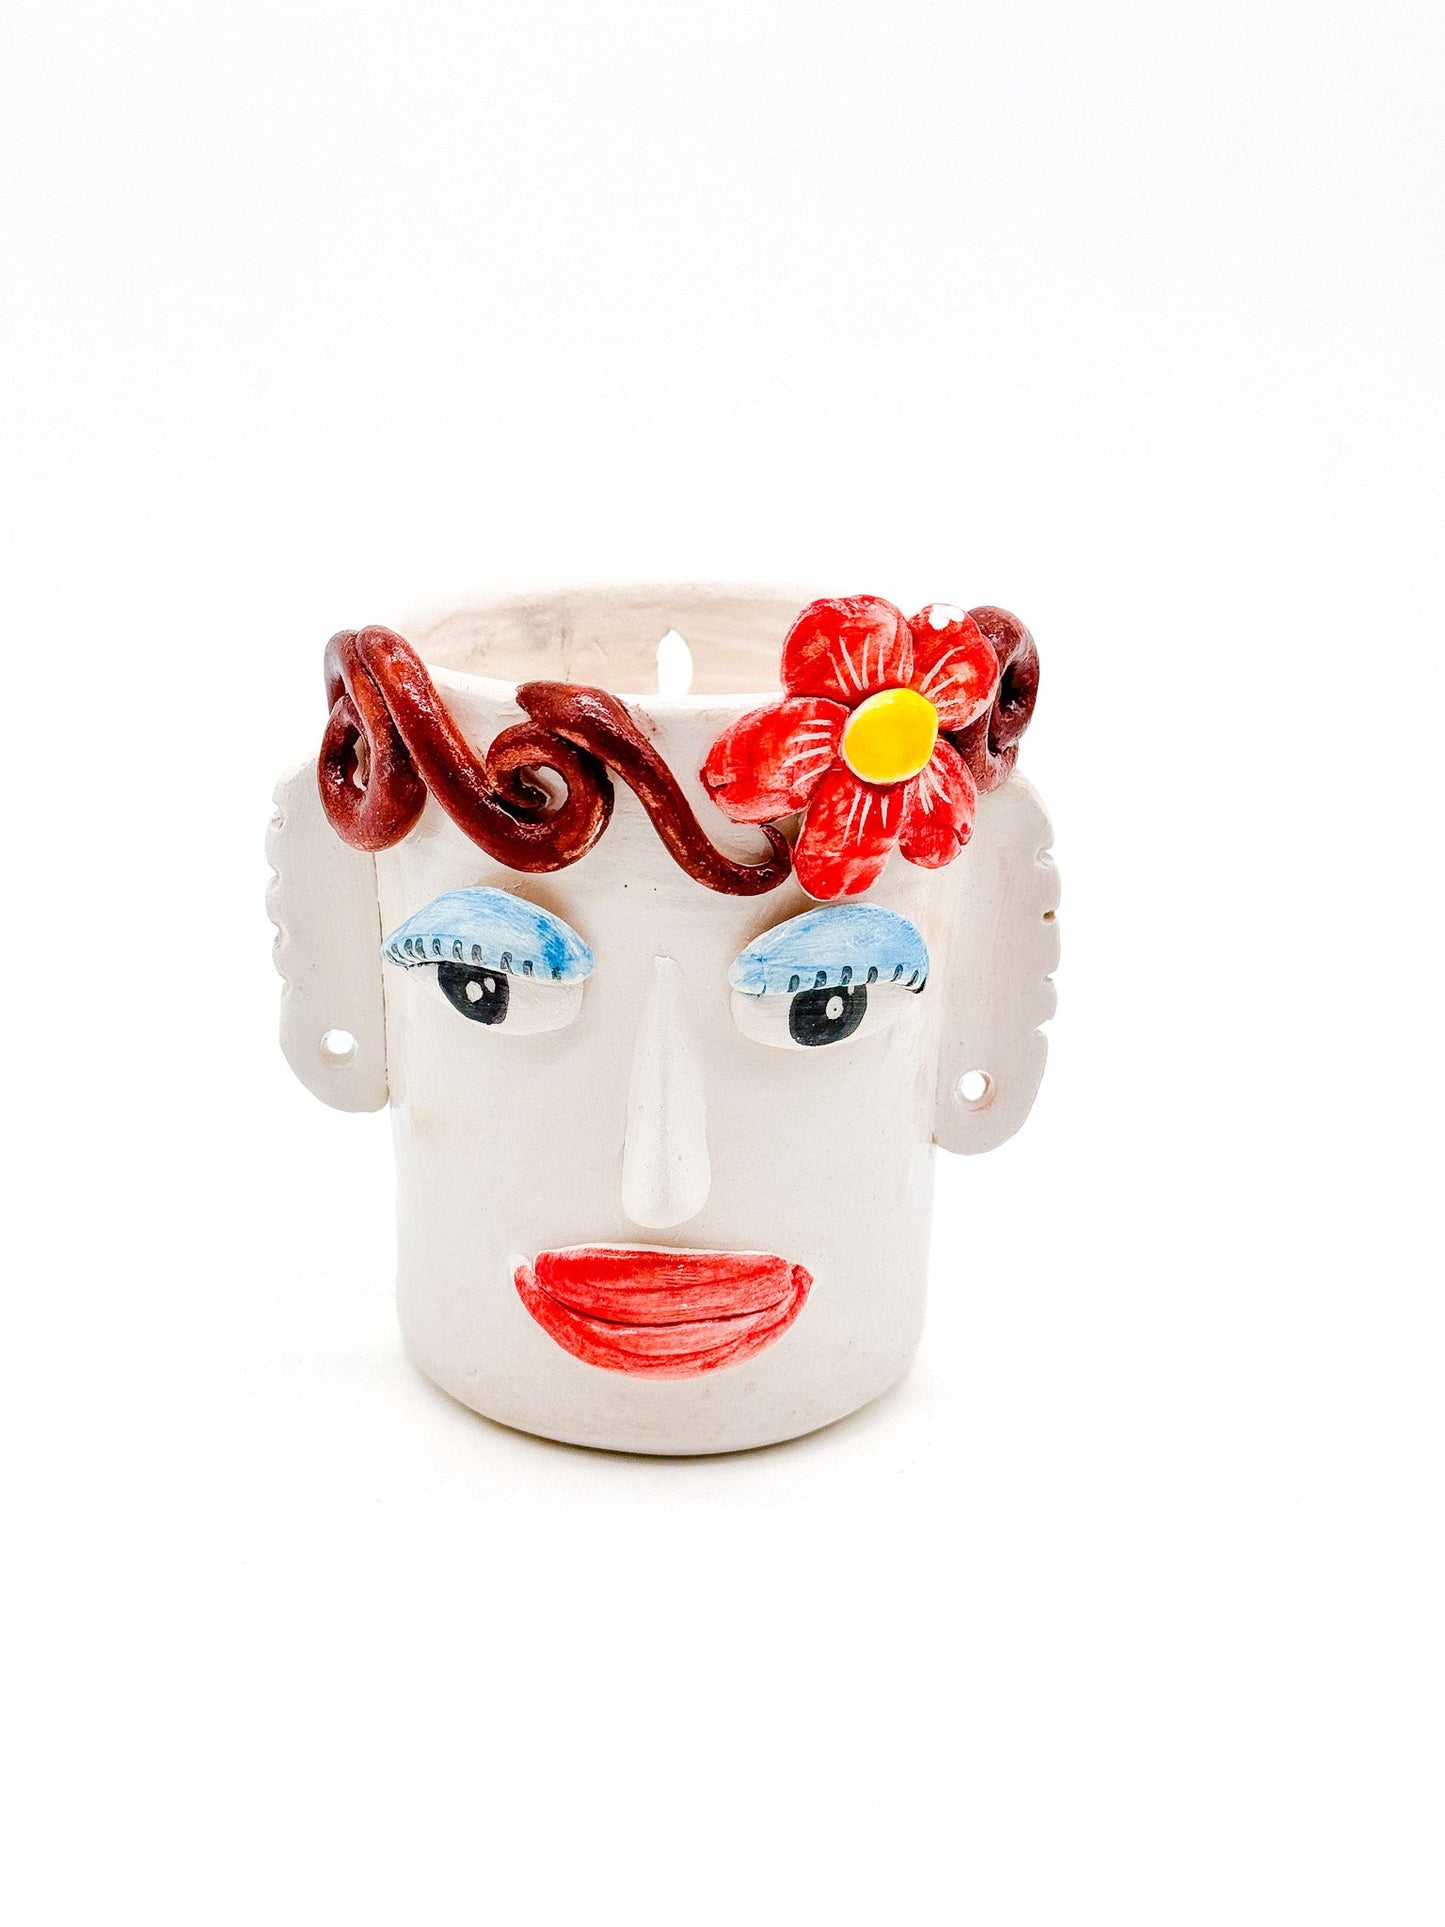 Crazy Face Pot - Flower - moruecoceramicas